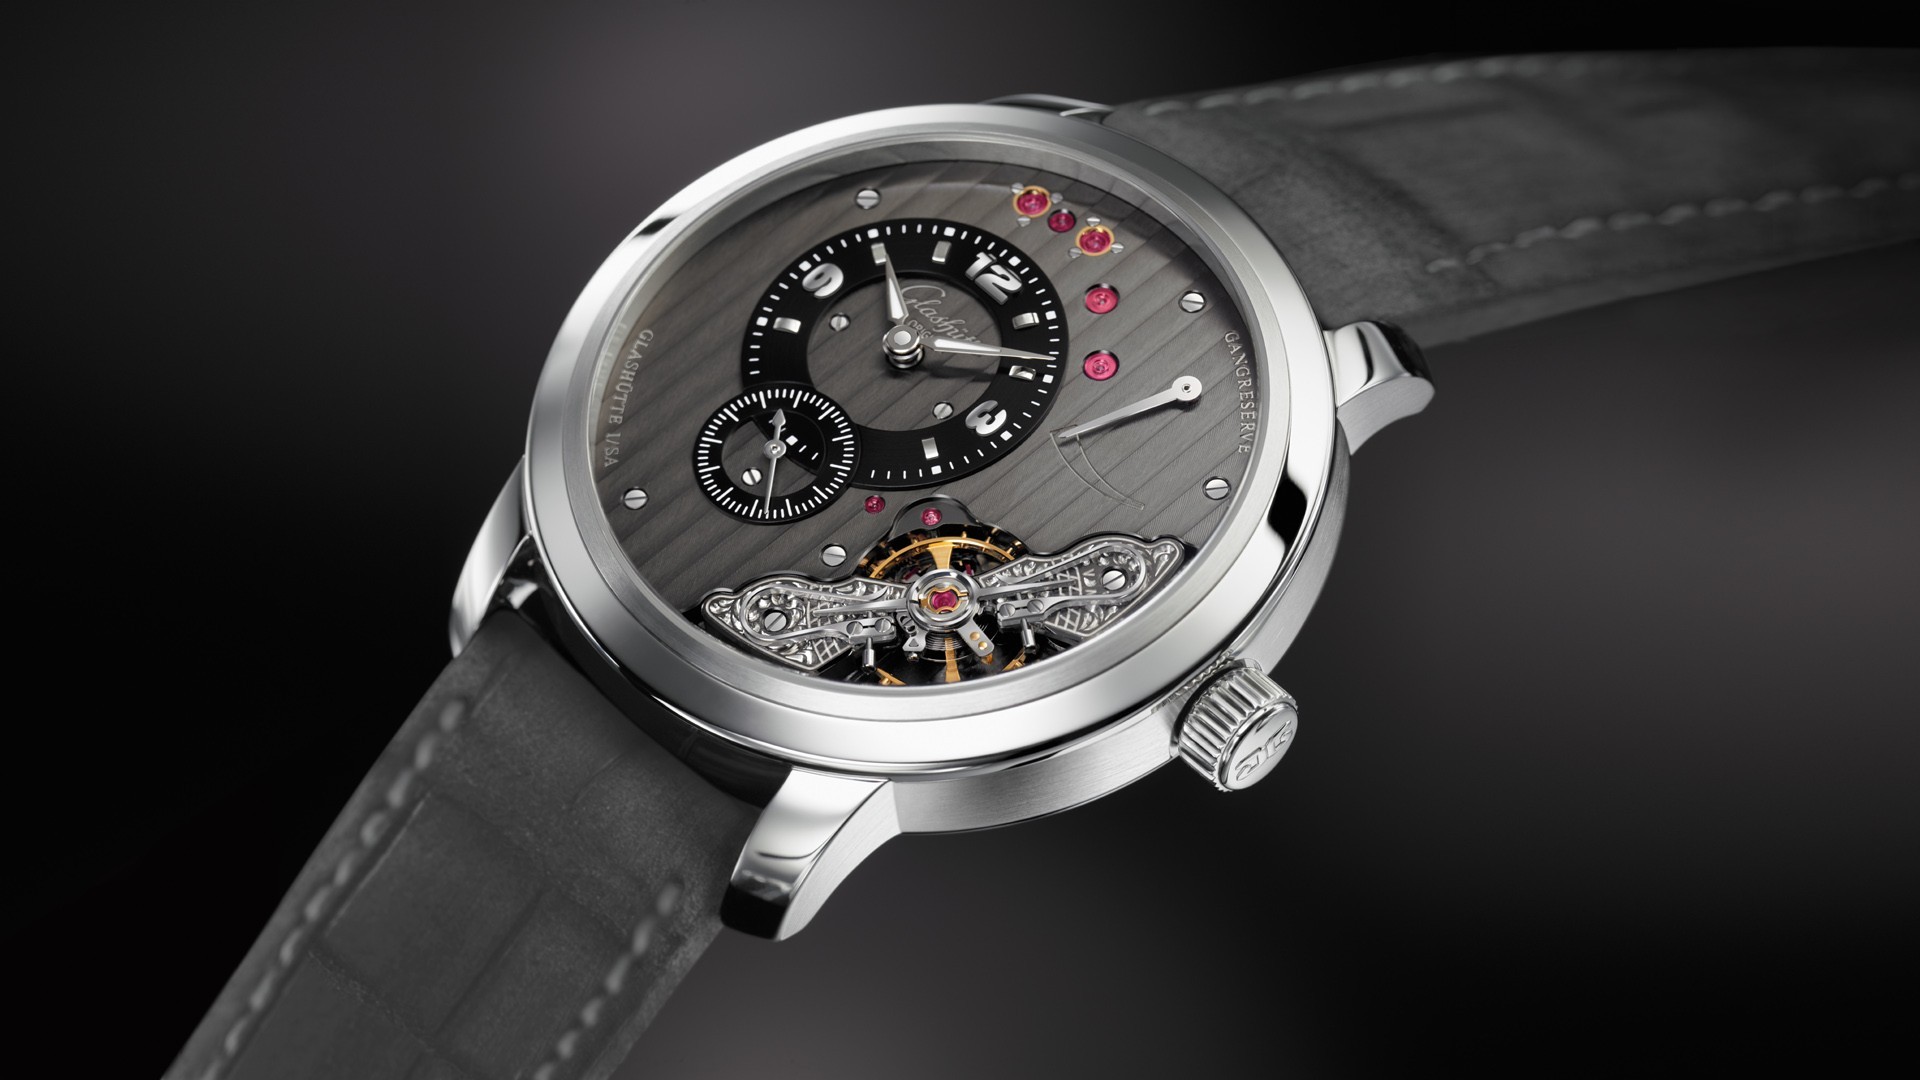 General 1920x1080 watch luxury watches Glashütte wristwatch technology closeup simple background